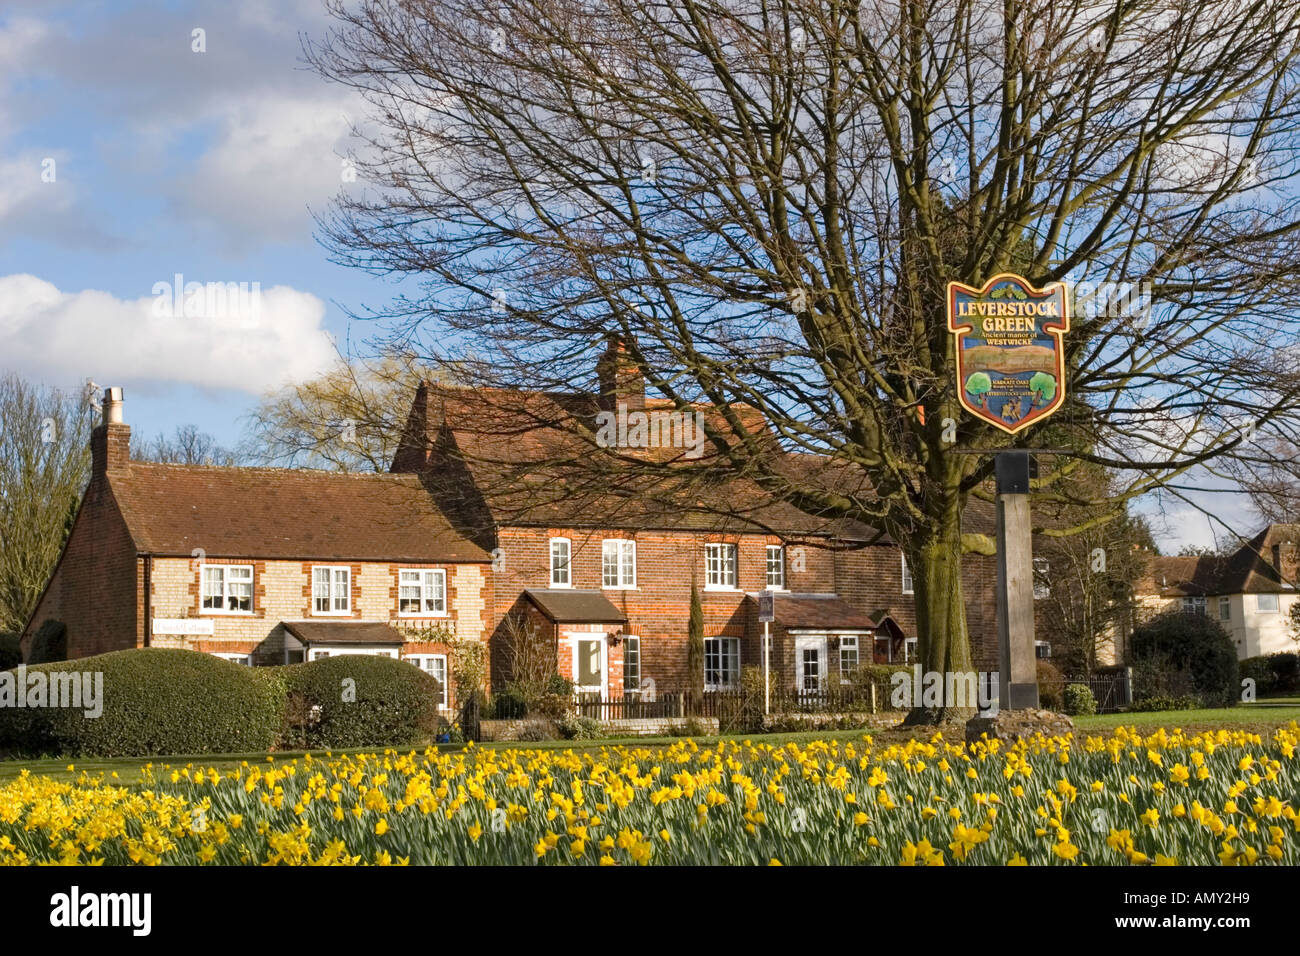 Leverstock verde - Hemel Hempstead, Hertfordshire Foto de stock